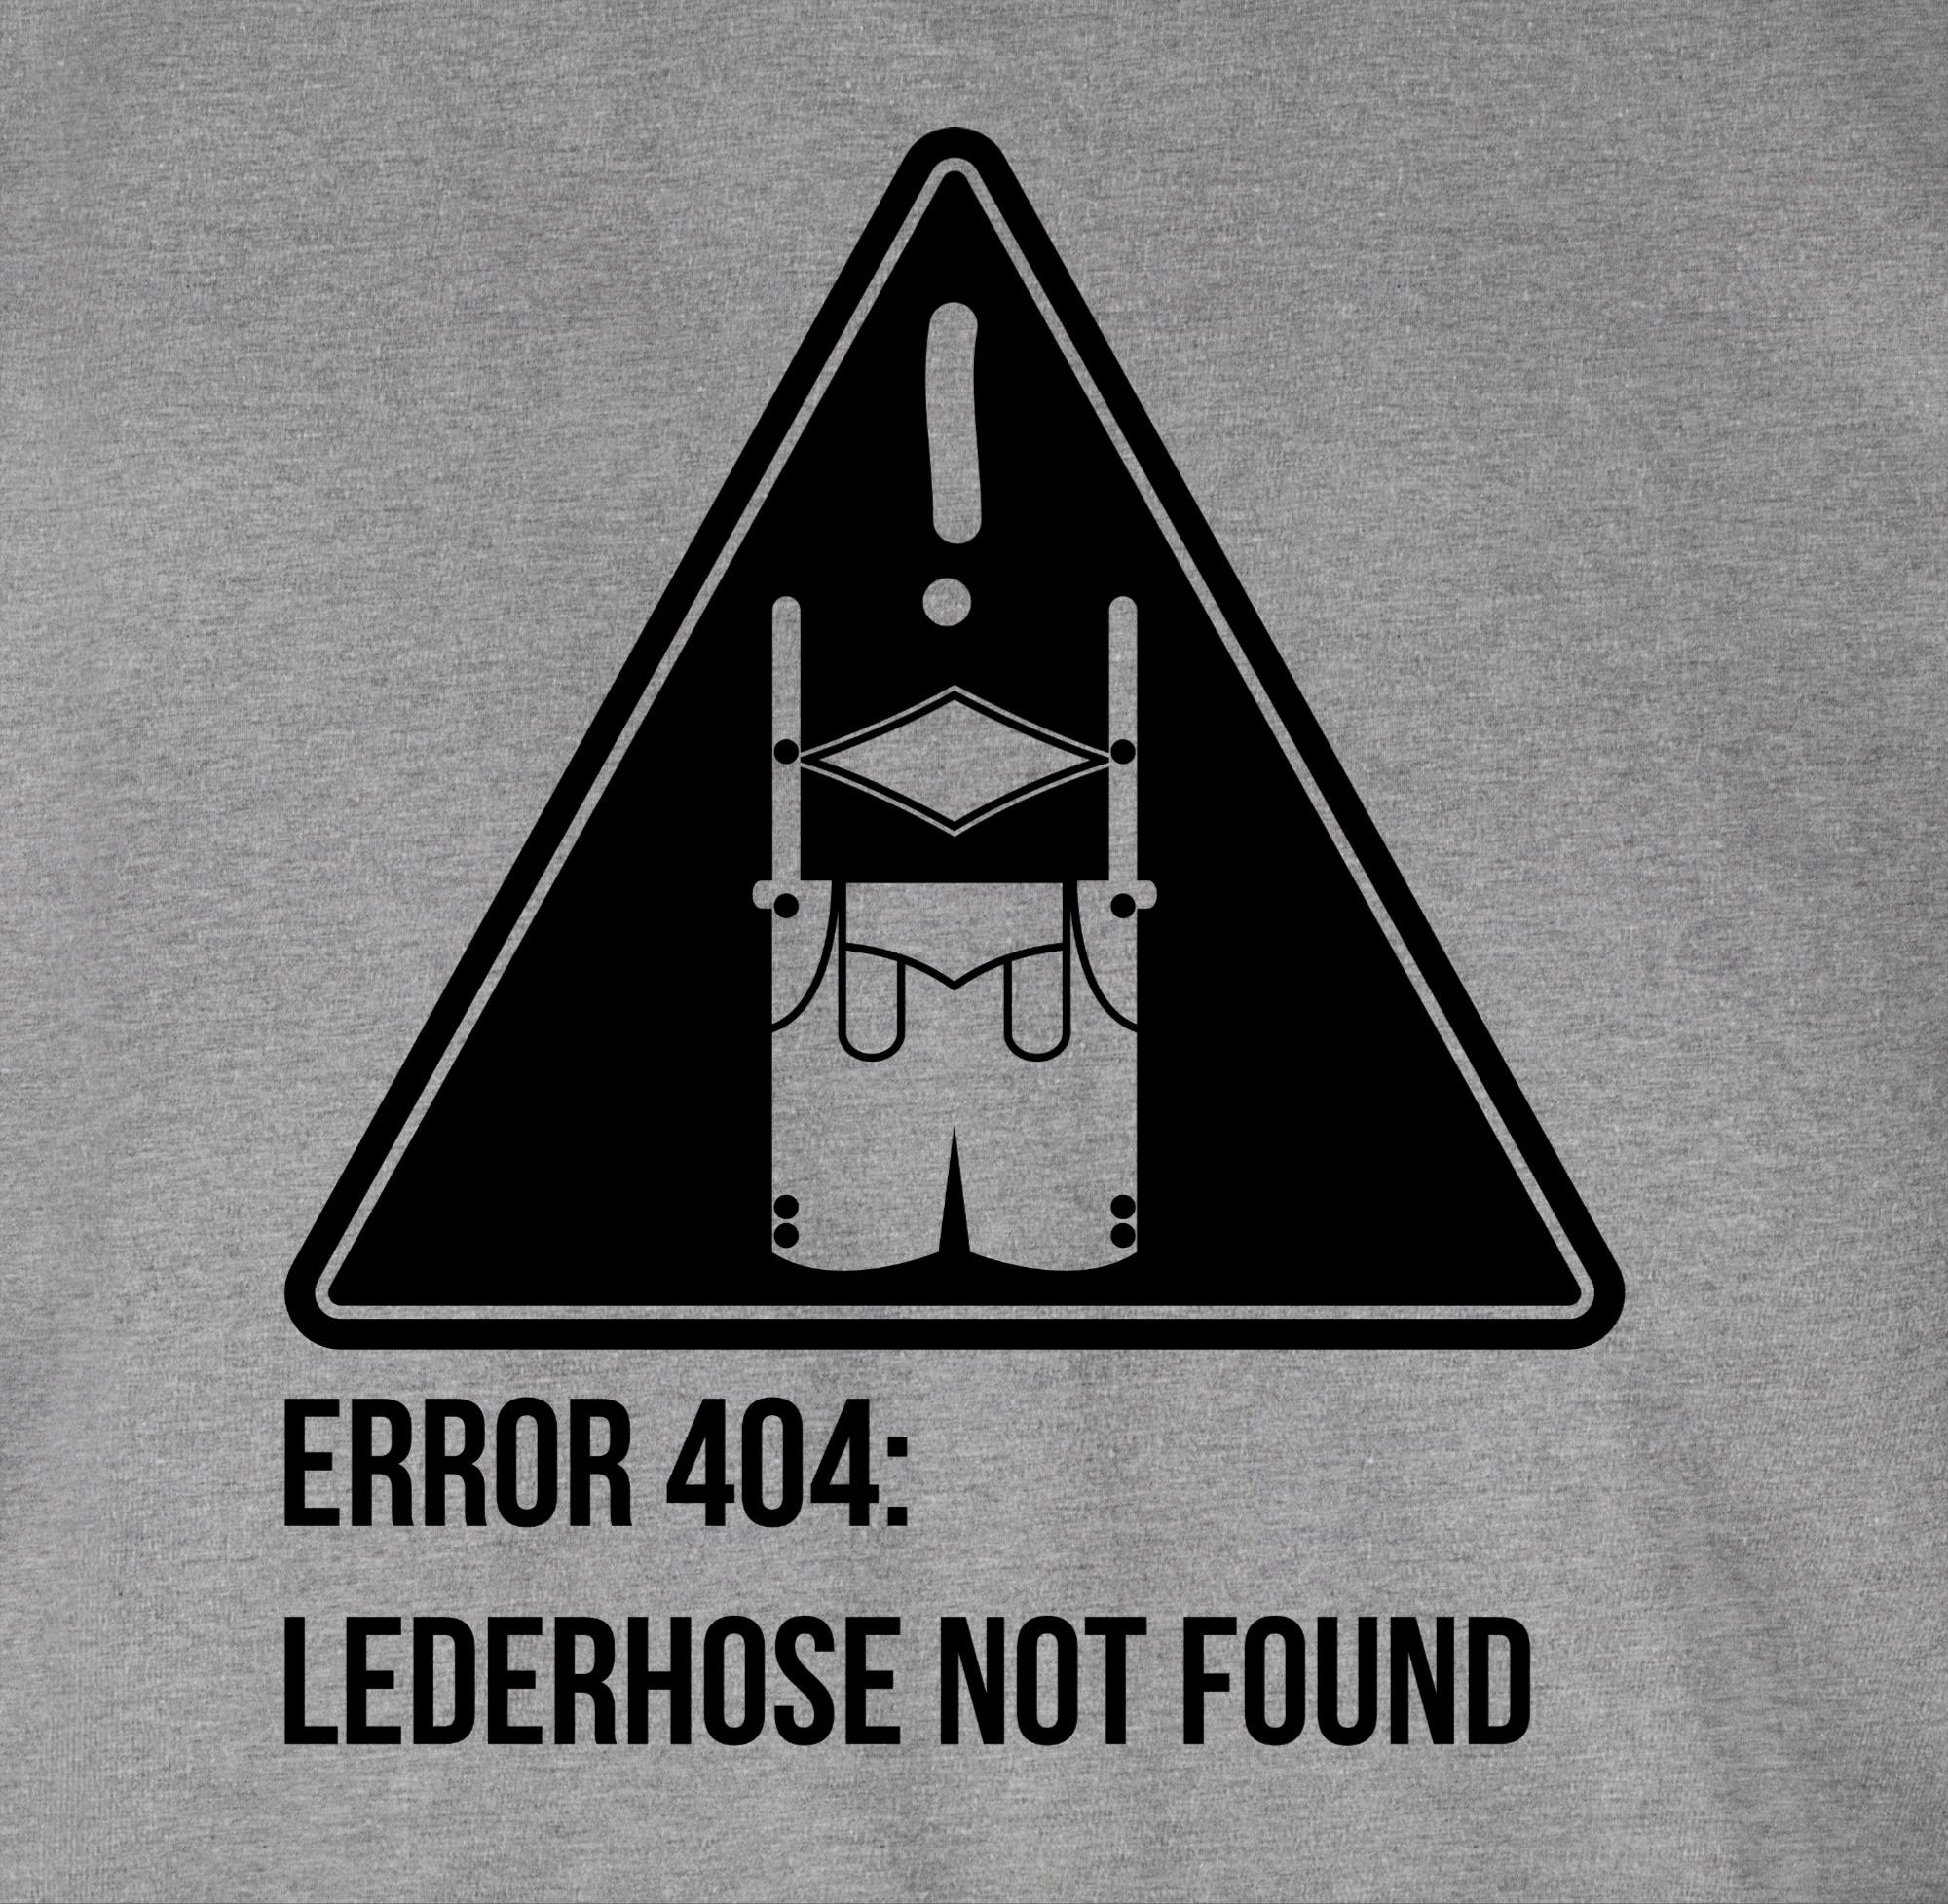 Shirtracer T-Shirt Error 404: Lederhose Oktoberfest Mode found not Grau für Herren 1 meliert